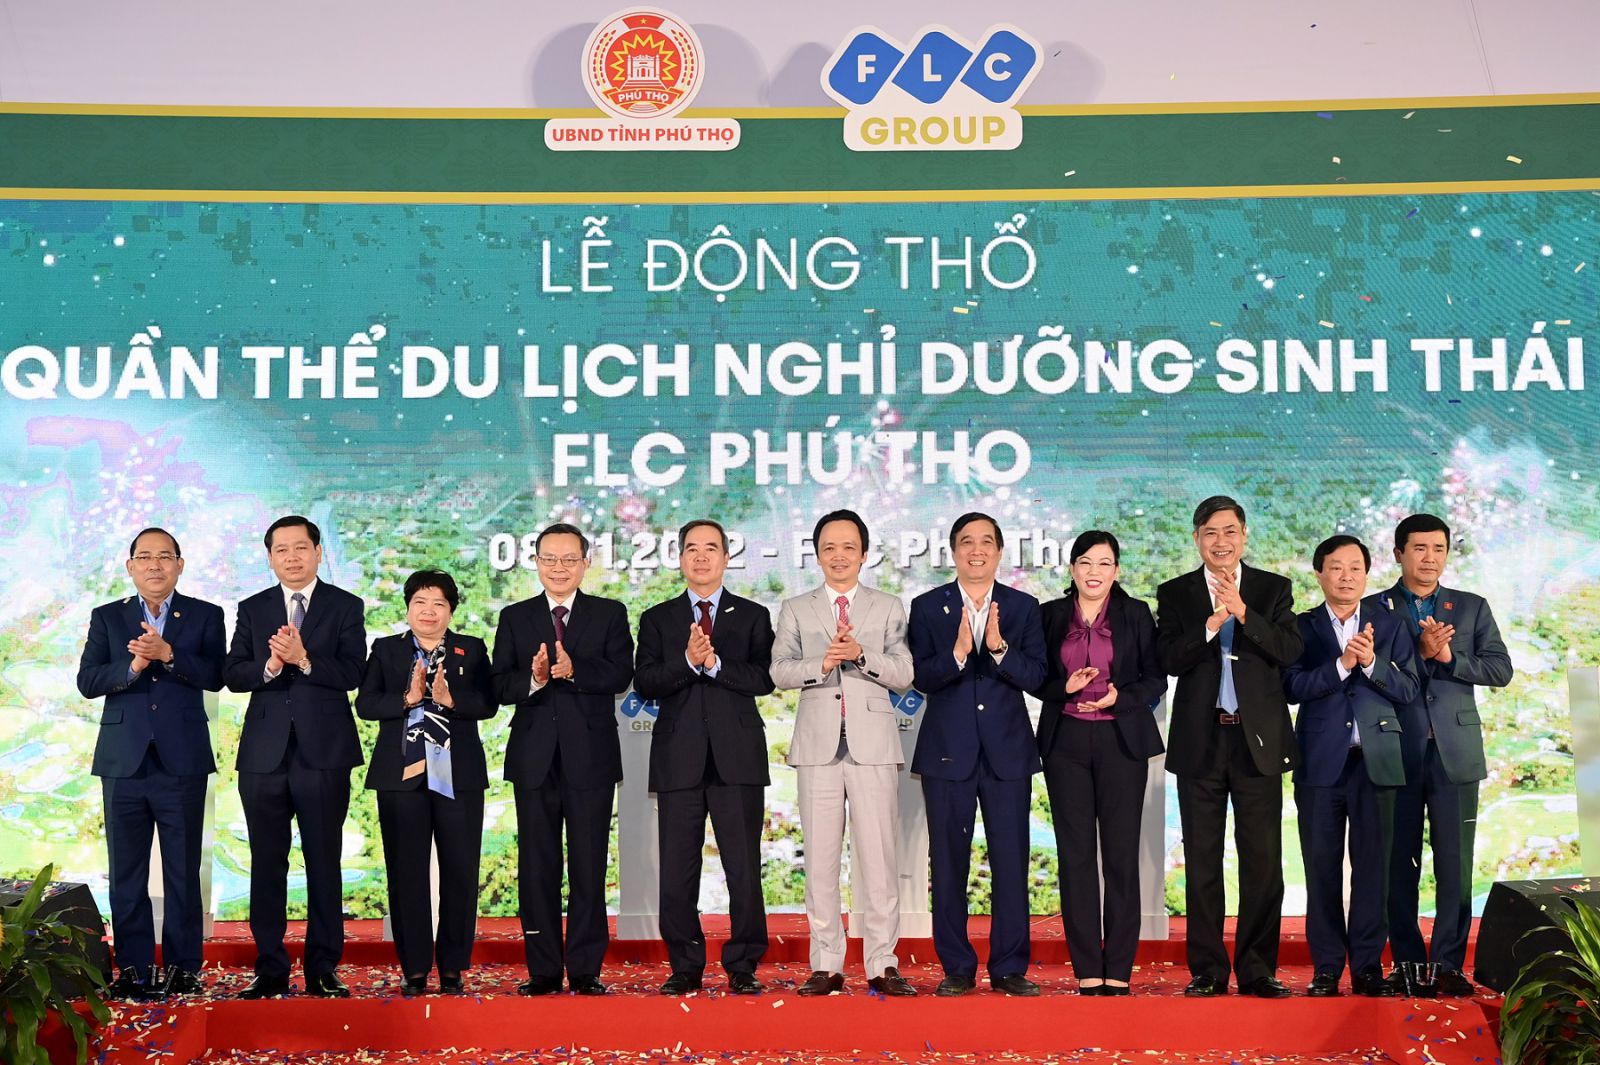 : FLC khởi công Quần thể Du lịch Nghỉ dưỡng sinh thái FLC Phú Thọ tại thành phố Việt Trì, tỉnh Phú Thọ ngày 8/1/2022